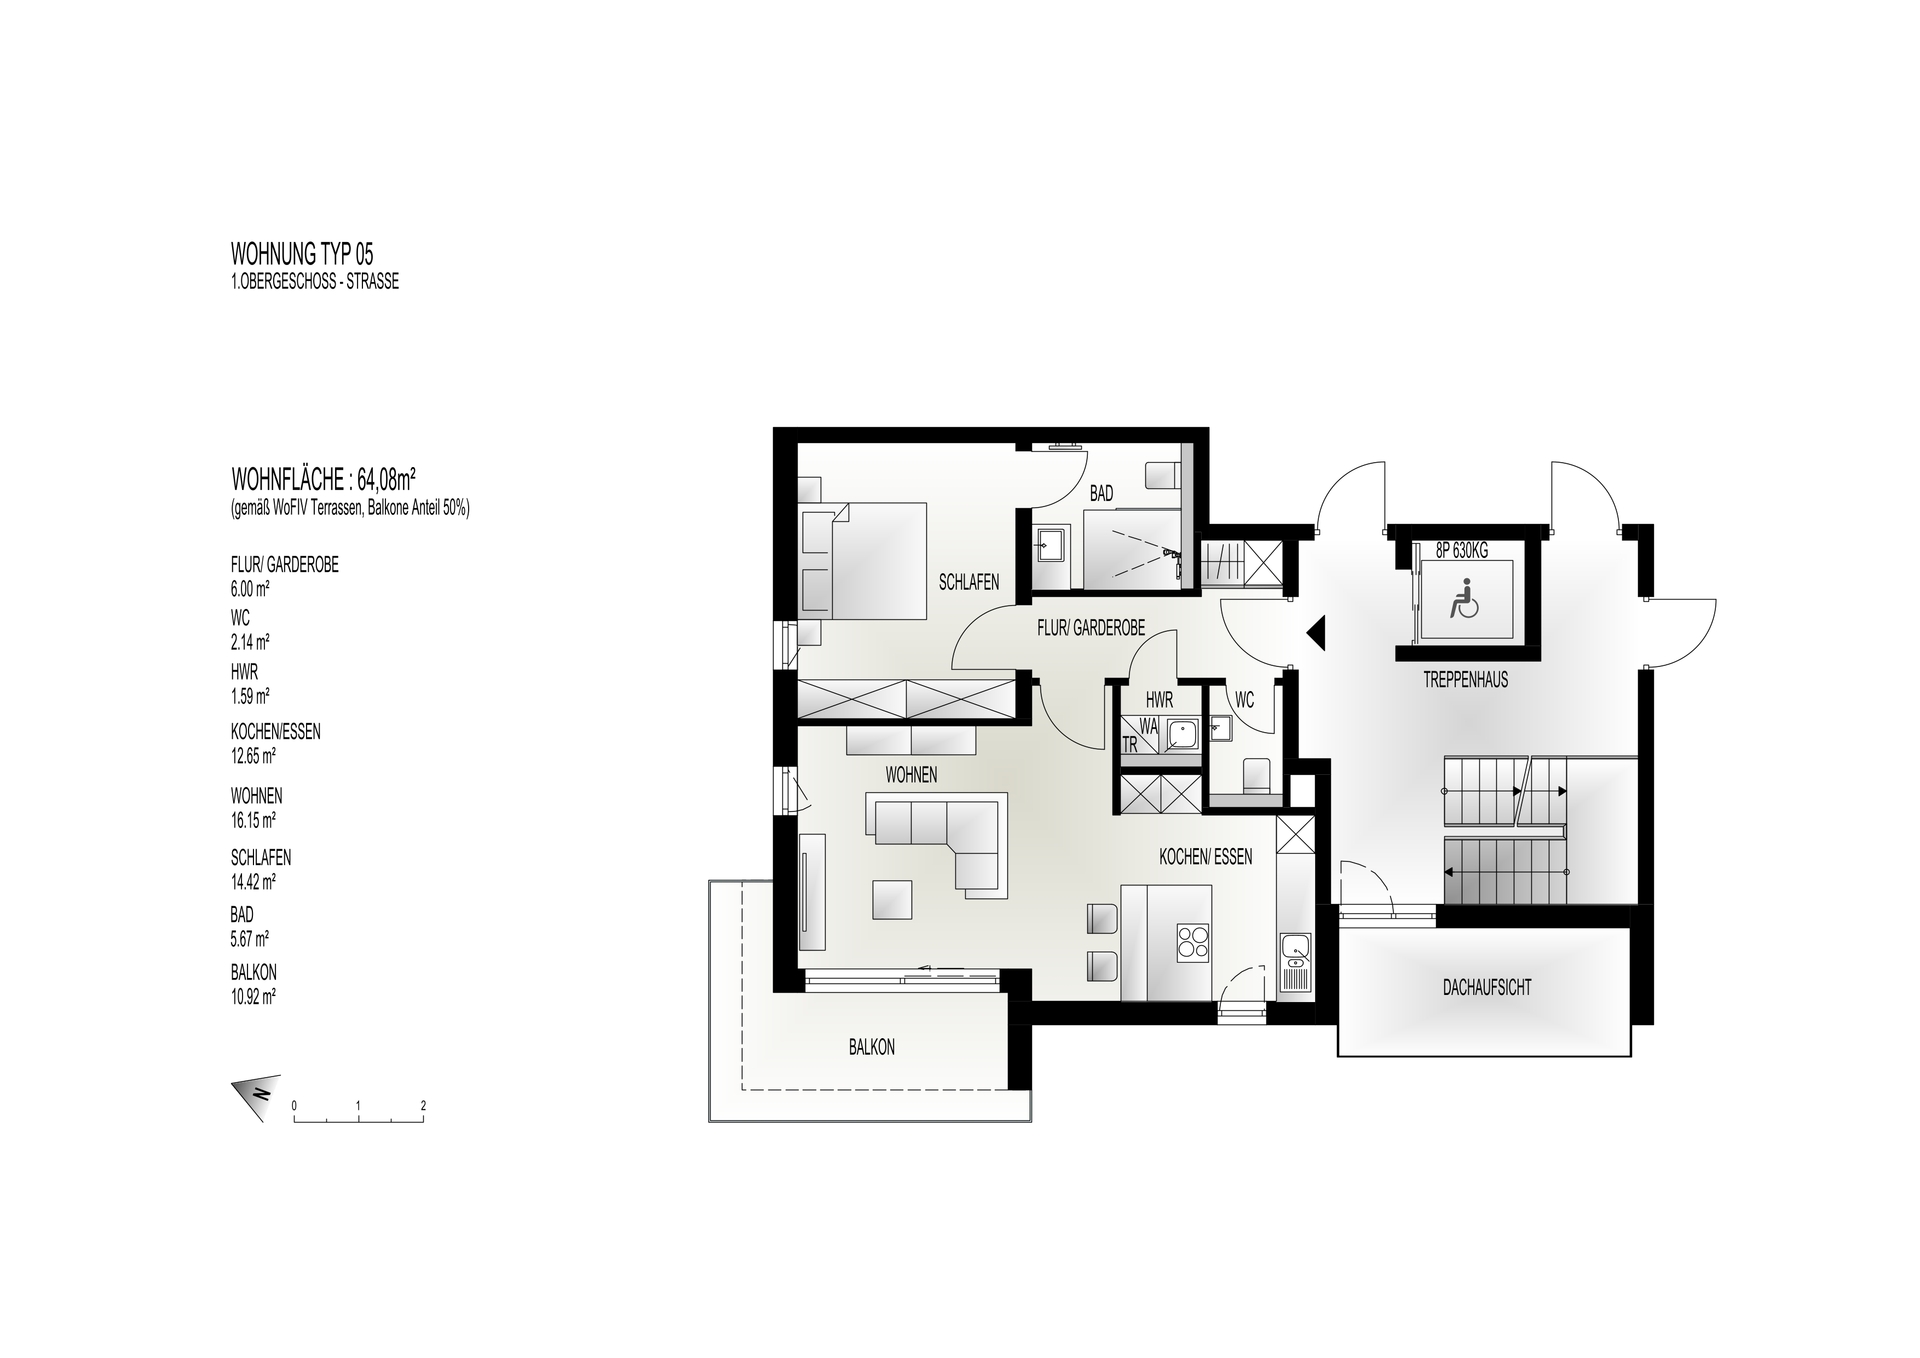 Option 3: Wohnung Typ 05